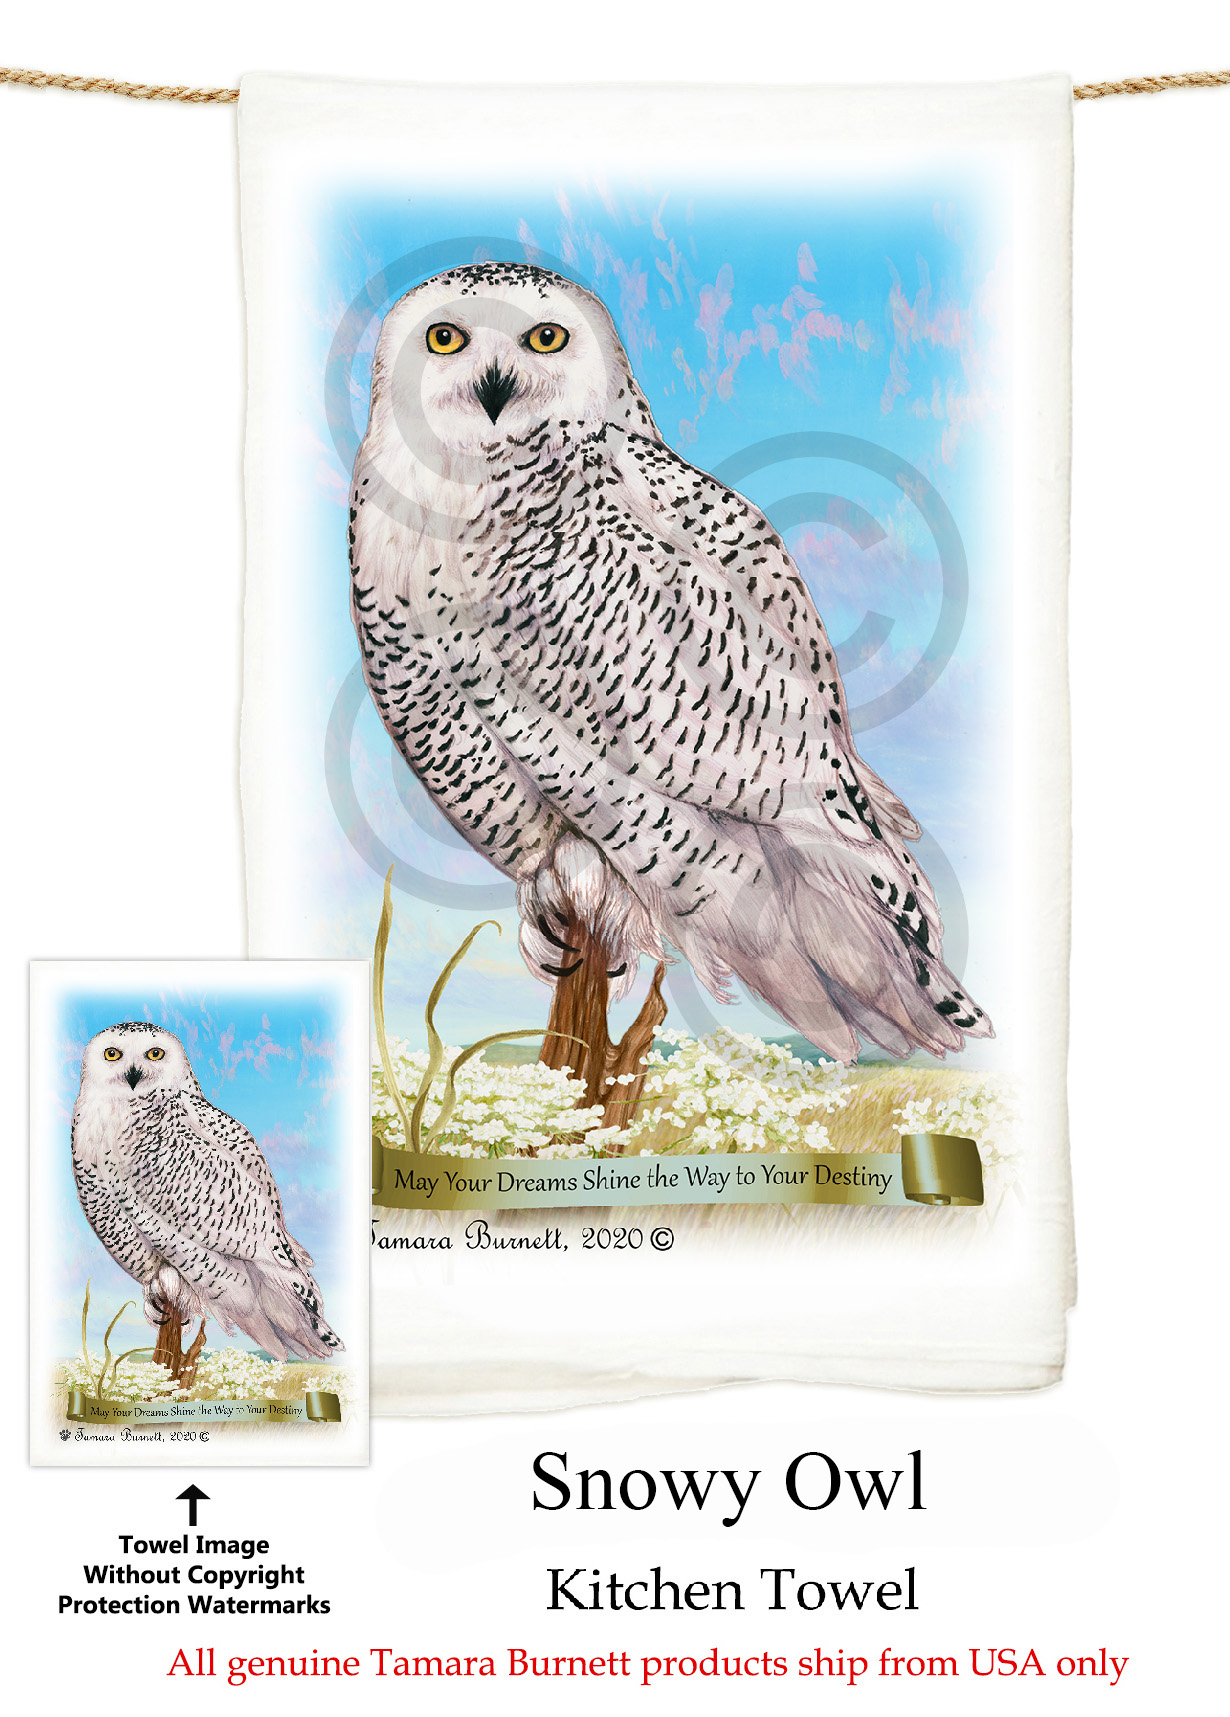 Snowy Owl - Flour Sack Towel image sized 1230 x 1717